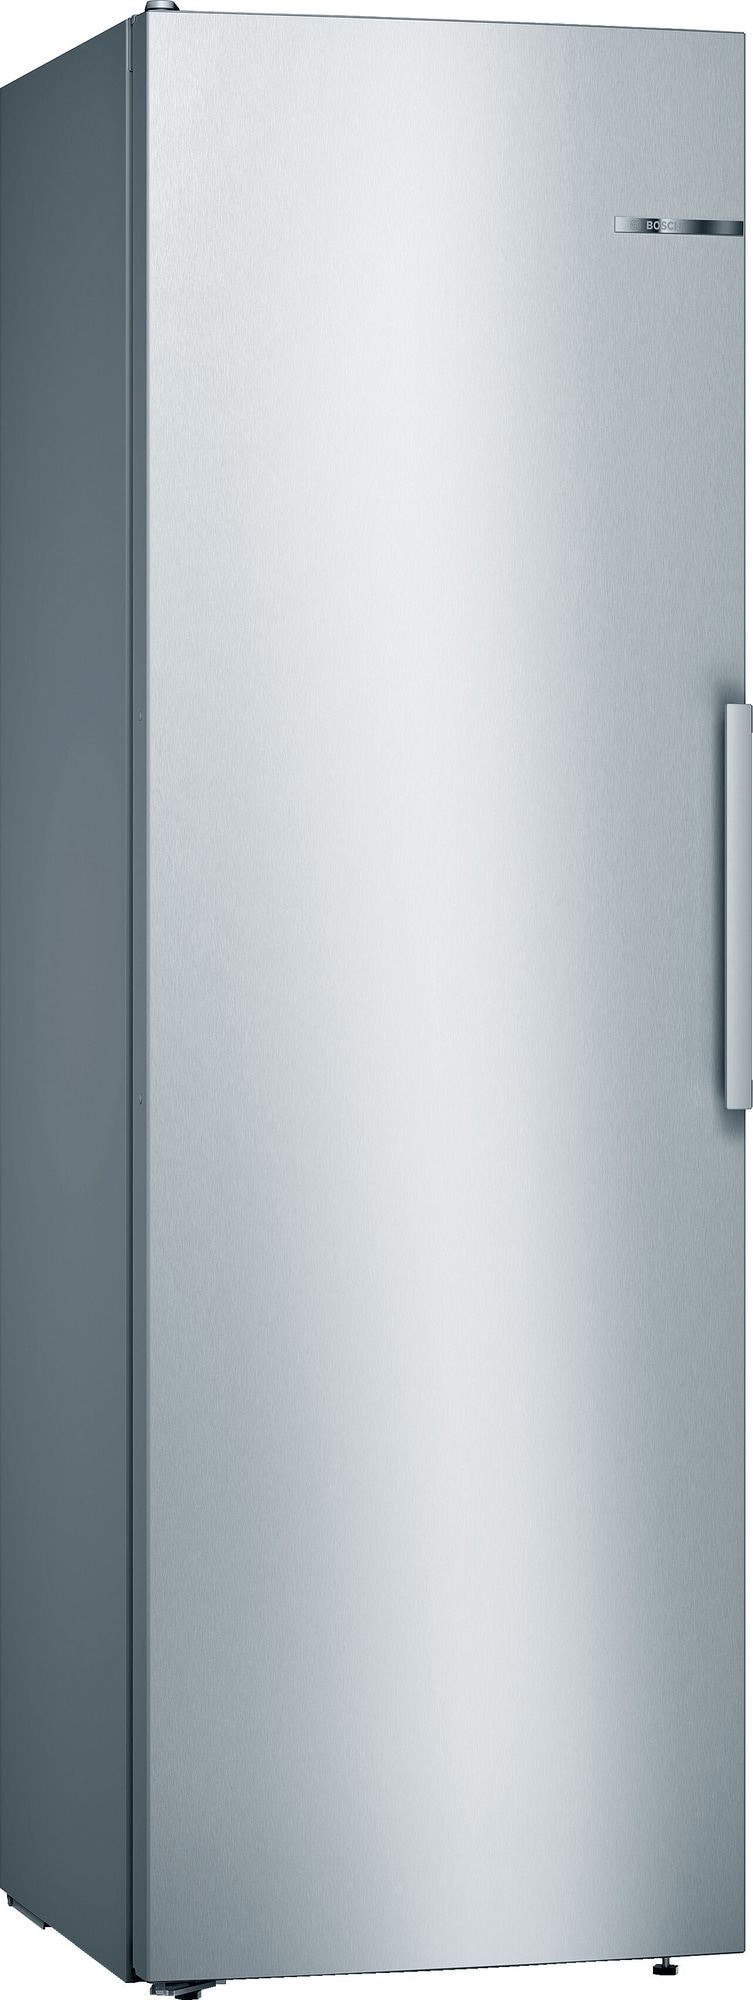 Billede af Bosch Series 4 køleskab KSV36VIEP (rustfrit stål)